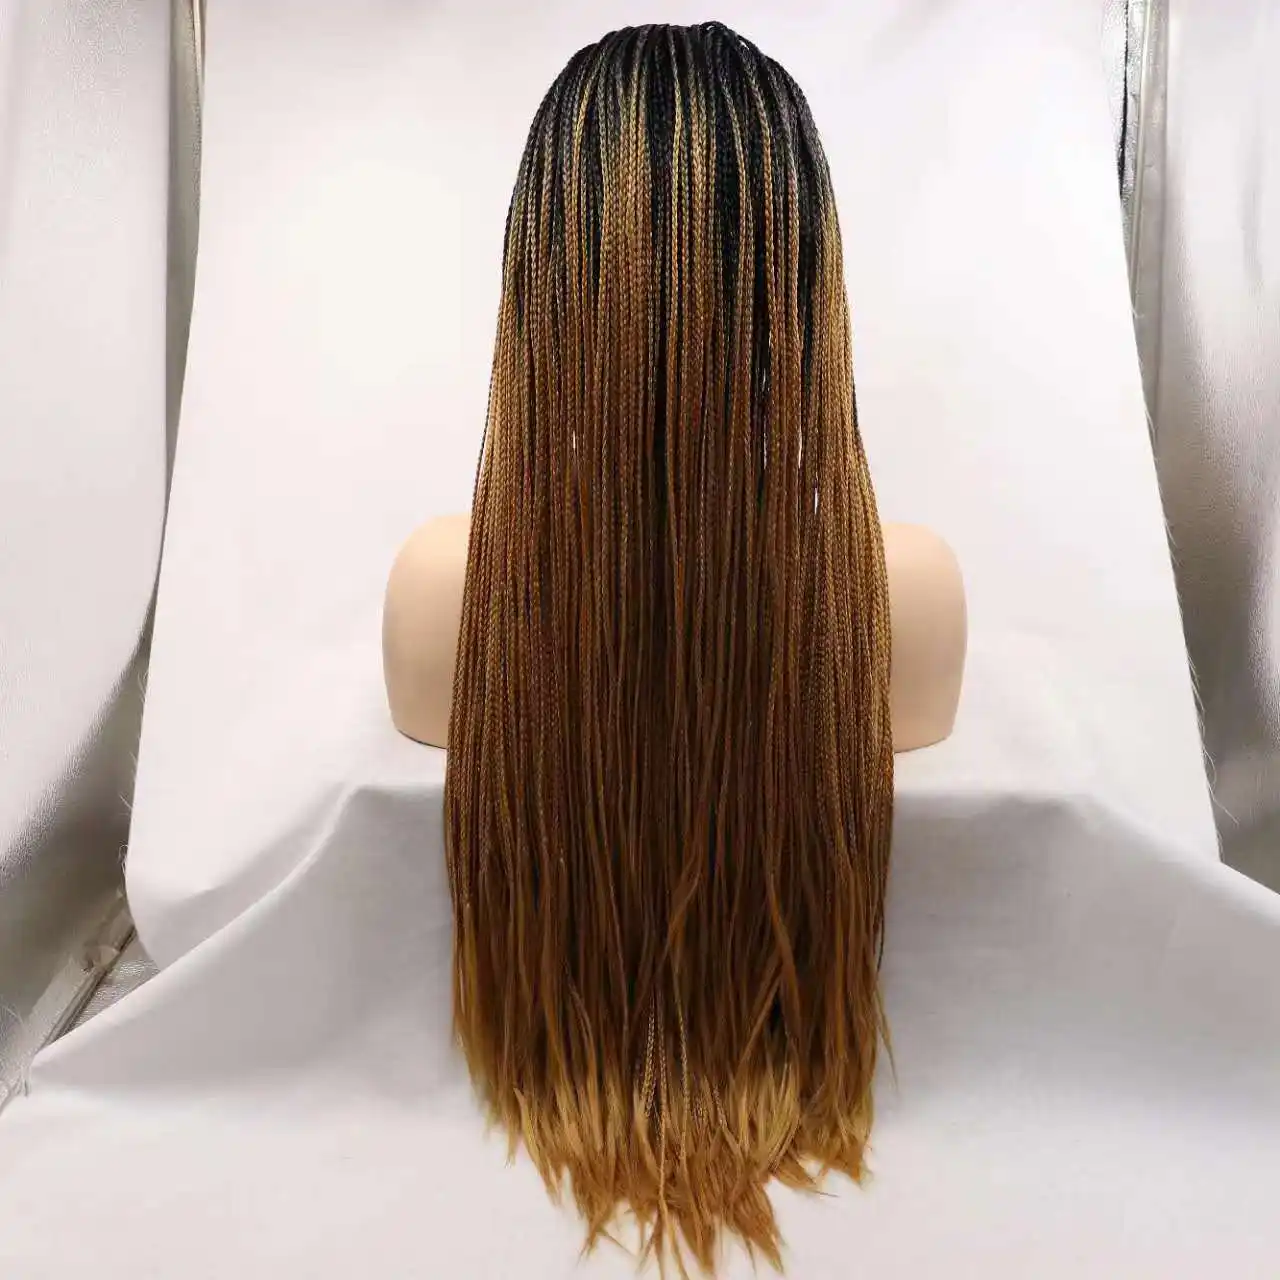 Toptan en çok satan modelleri örgülü saç peruk degrade örgülü peruk sentetik peruk kaya örgülü tığ saç siyah kadınlar için 24"